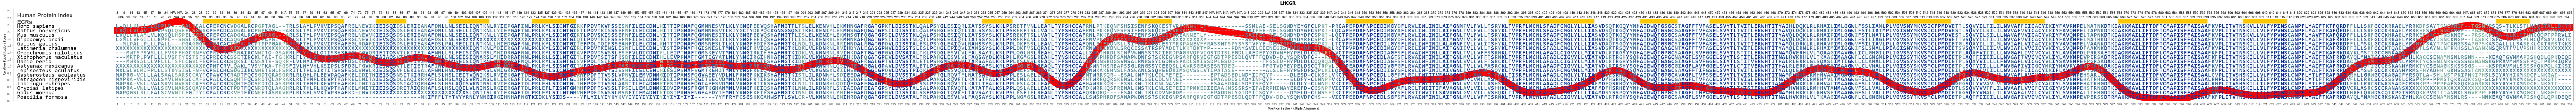 Lhcg Receptor Polymorphisms In Pcos Patients